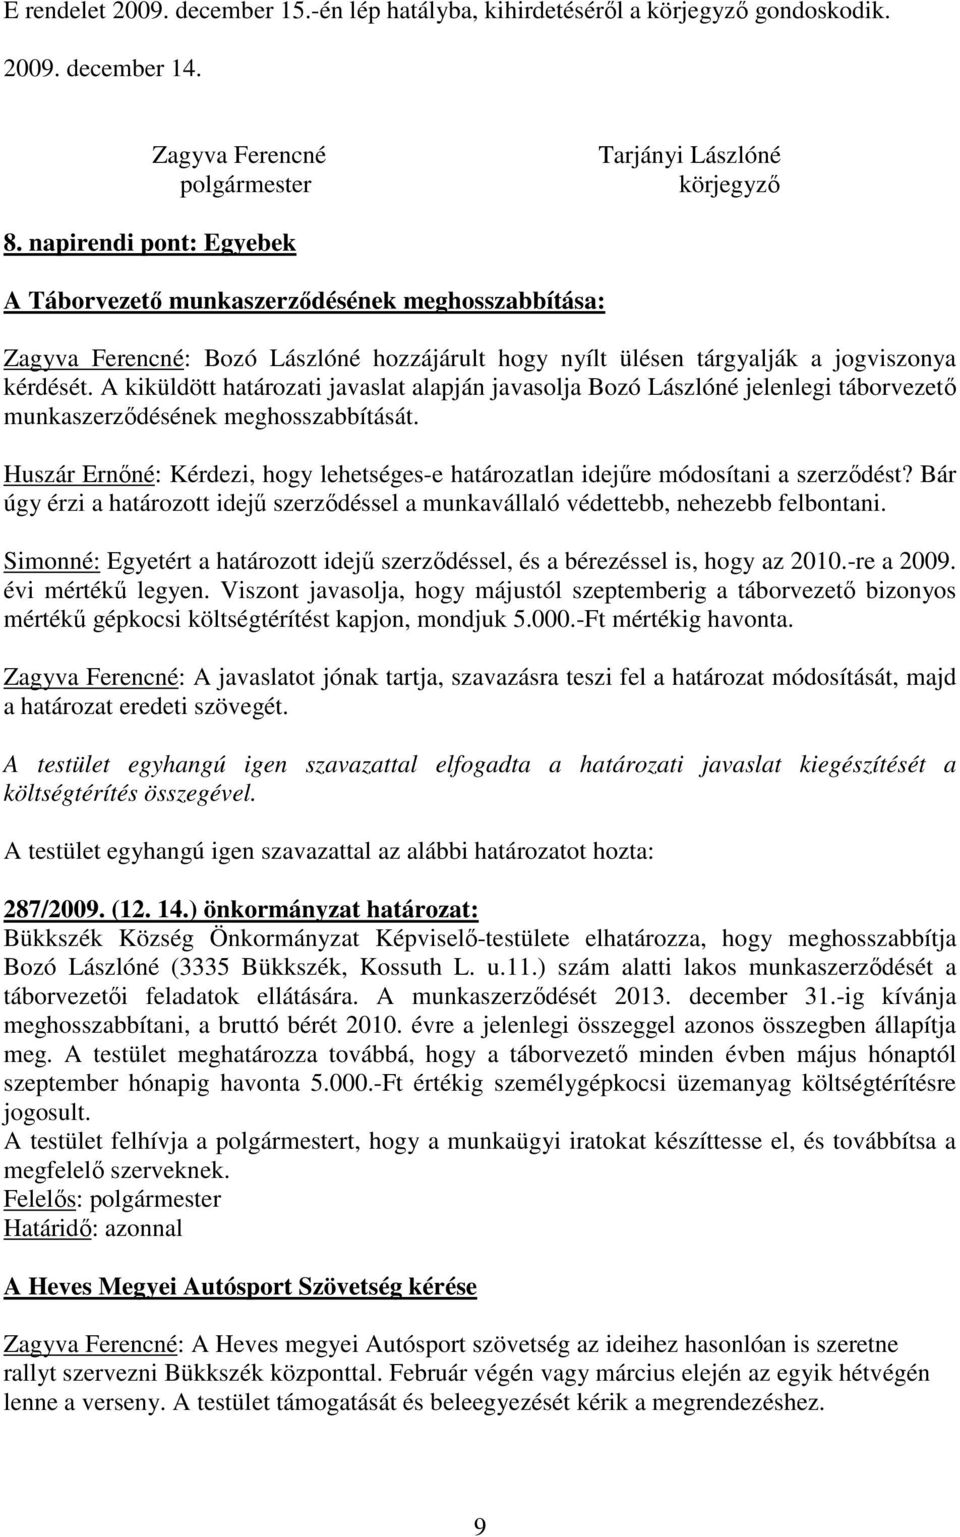 A kiküldött határozati javaslat alapján javasolja Bozó Lászlóné jelenlegi táborvezetı munkaszerzıdésének meghosszabbítását.